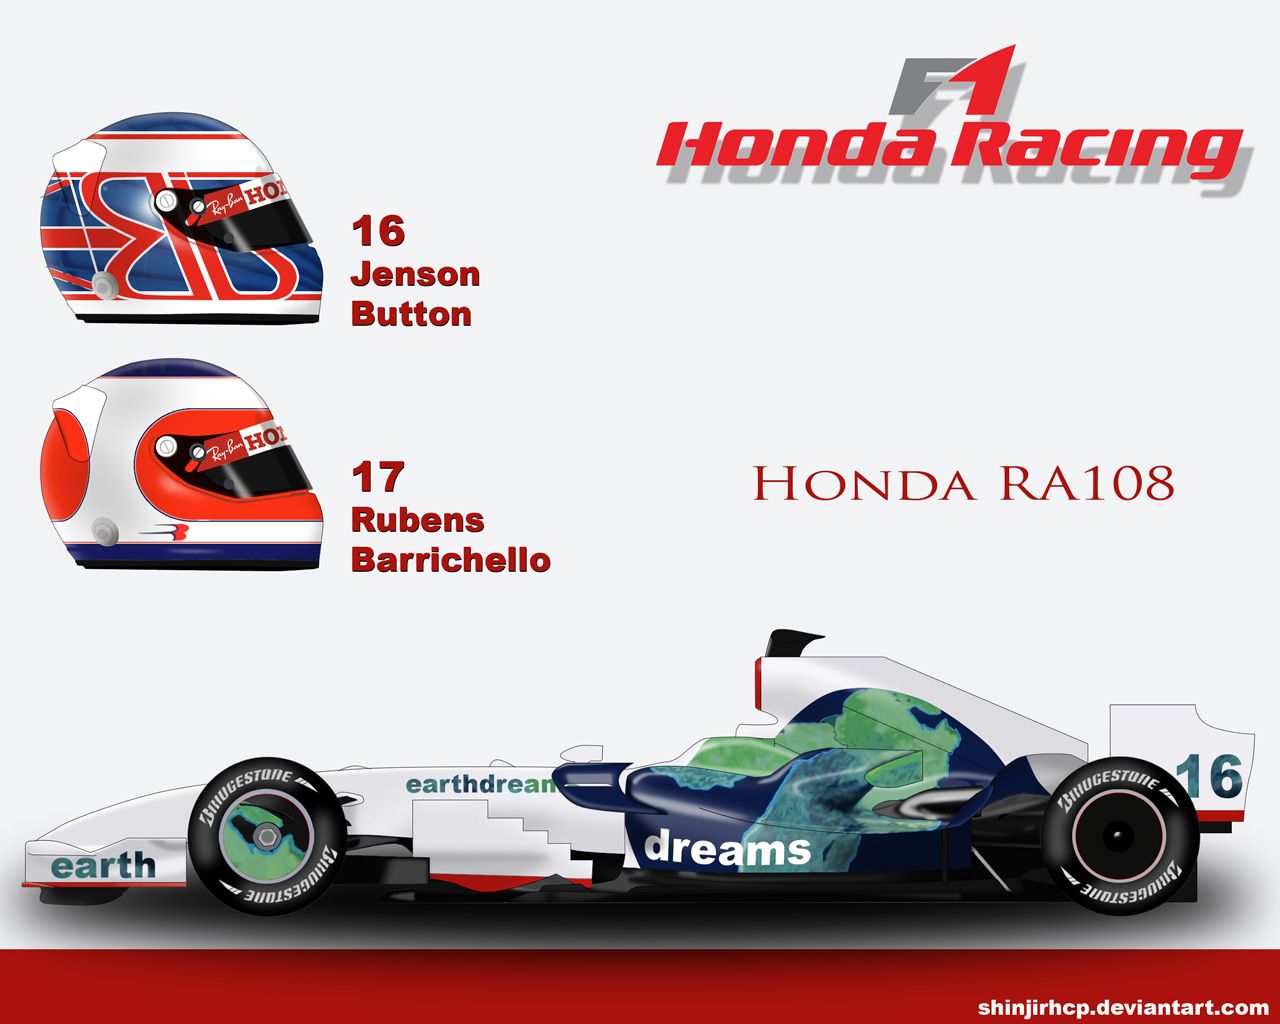 Honda Ra108 Wallpapers